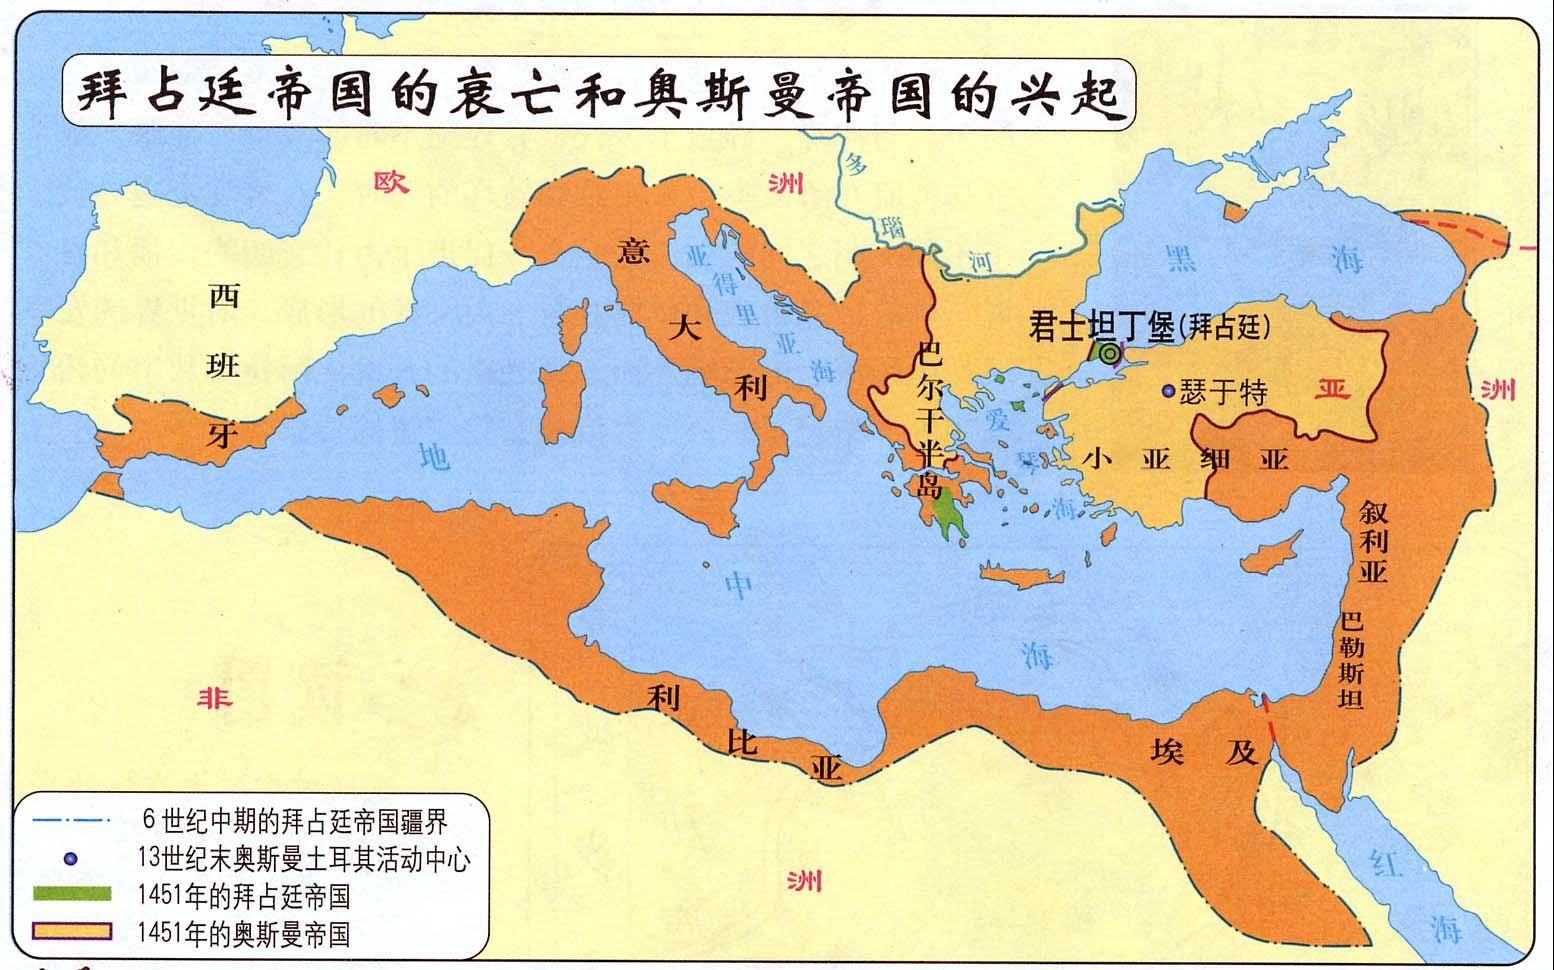 东罗马帝国最大版图图片